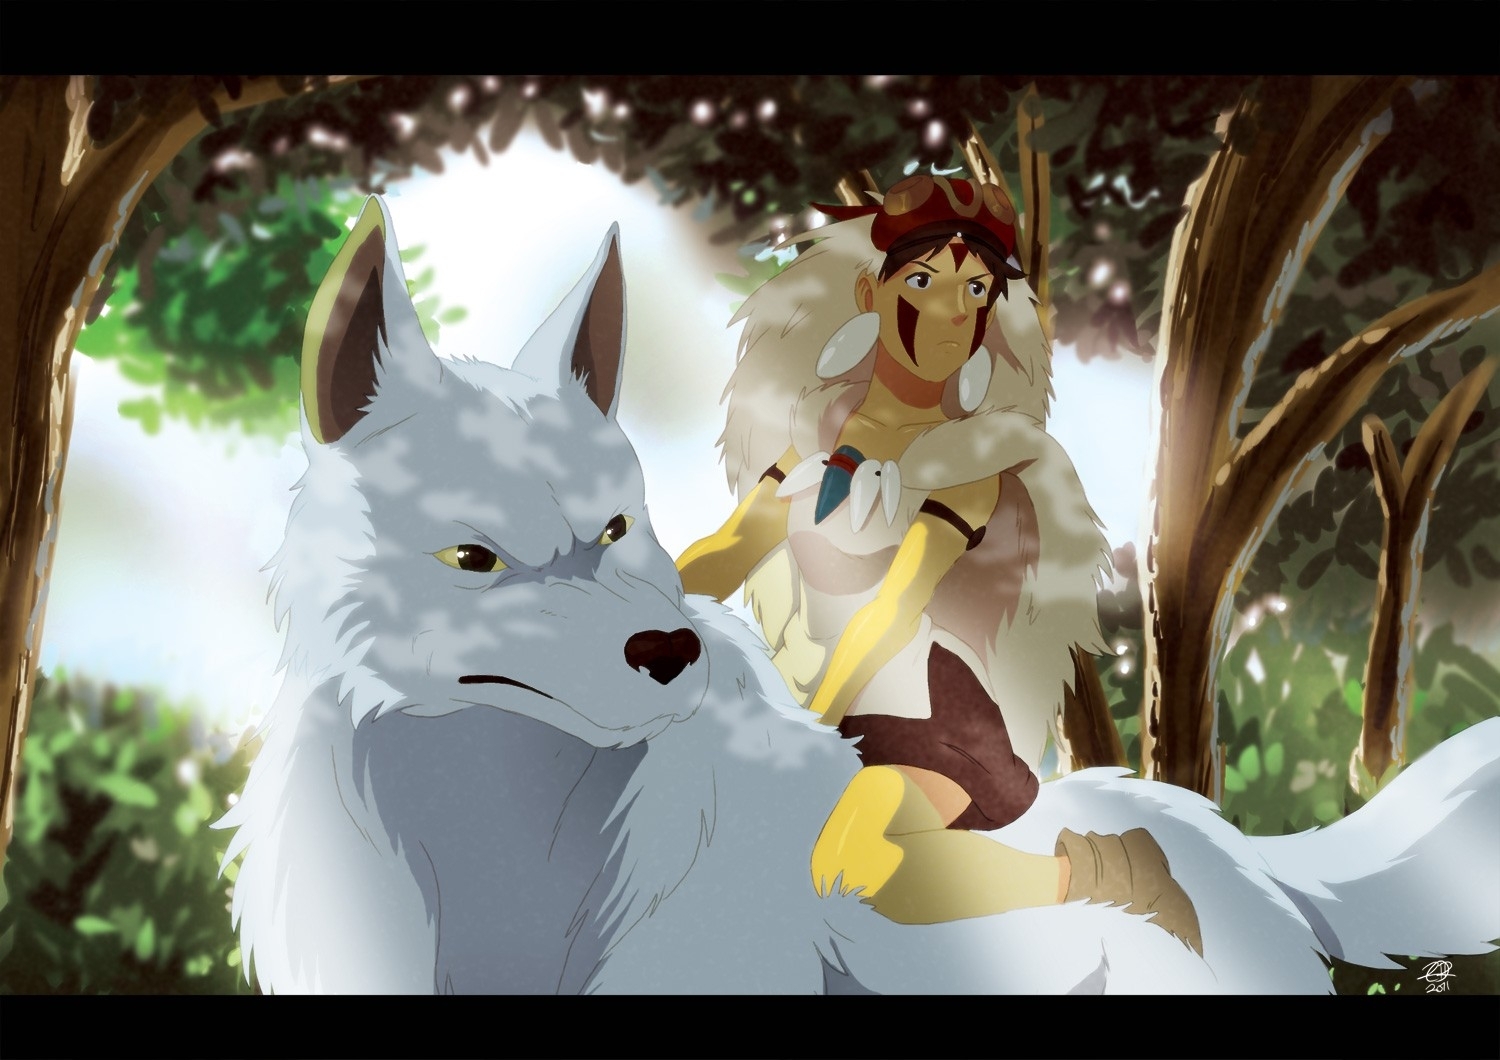 Trees Princess Mononoke Studio Ghibli Anime Wolves - Princesa Mononoke Fondo De Pantalla - HD Wallpaper 